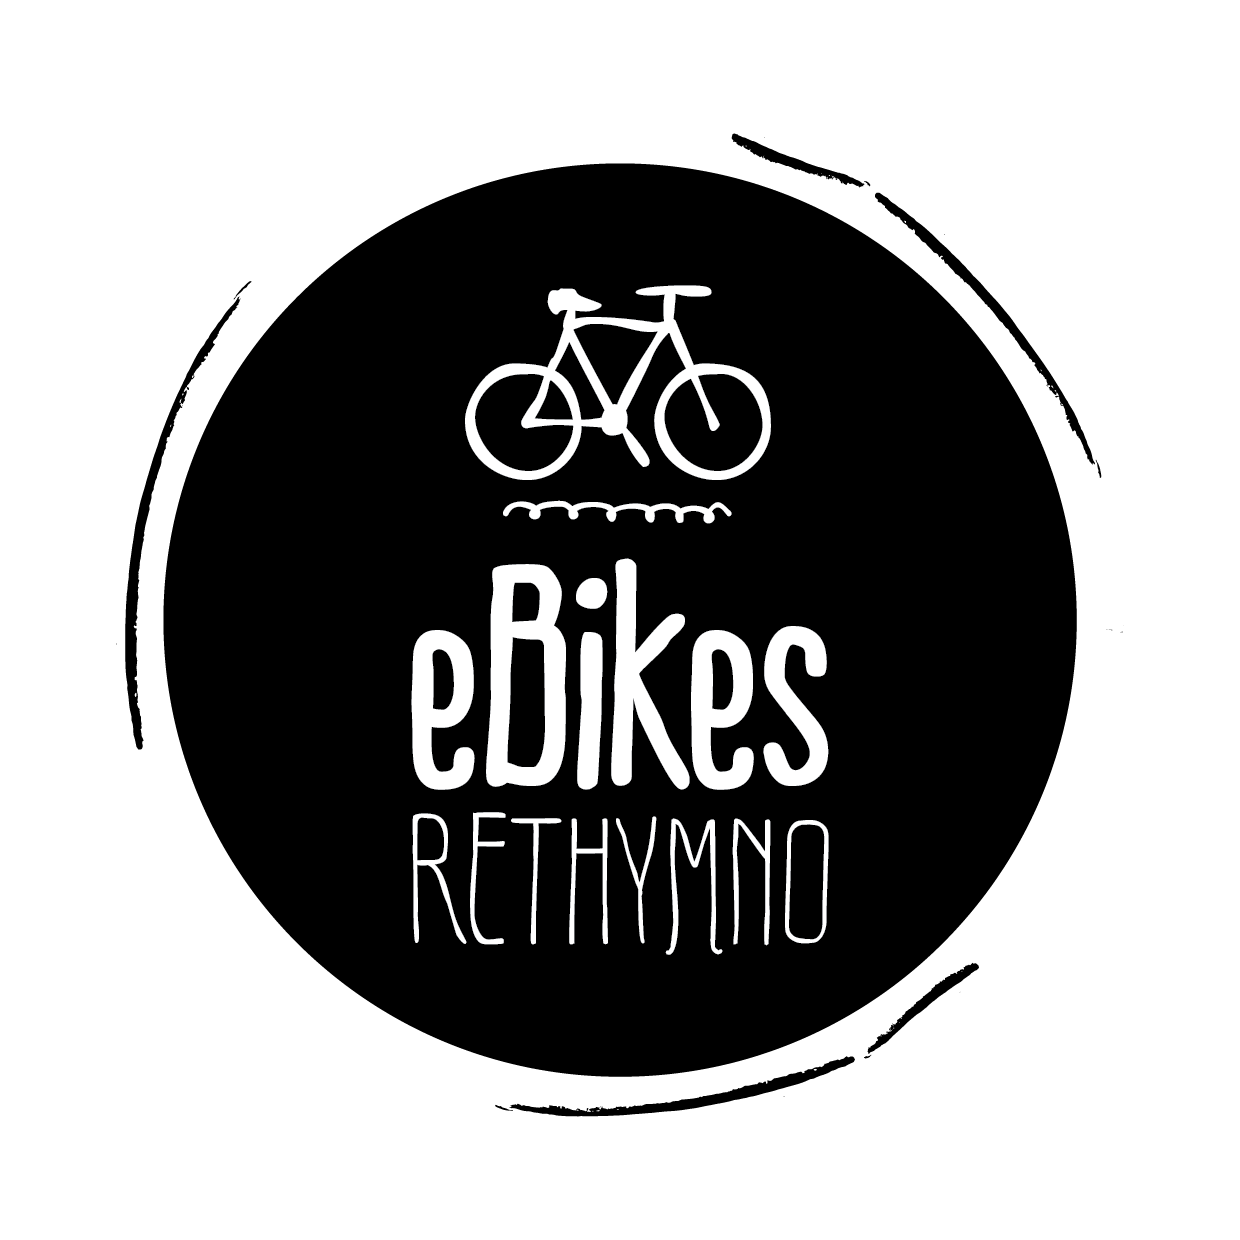 eBikes Rethymno logo partner